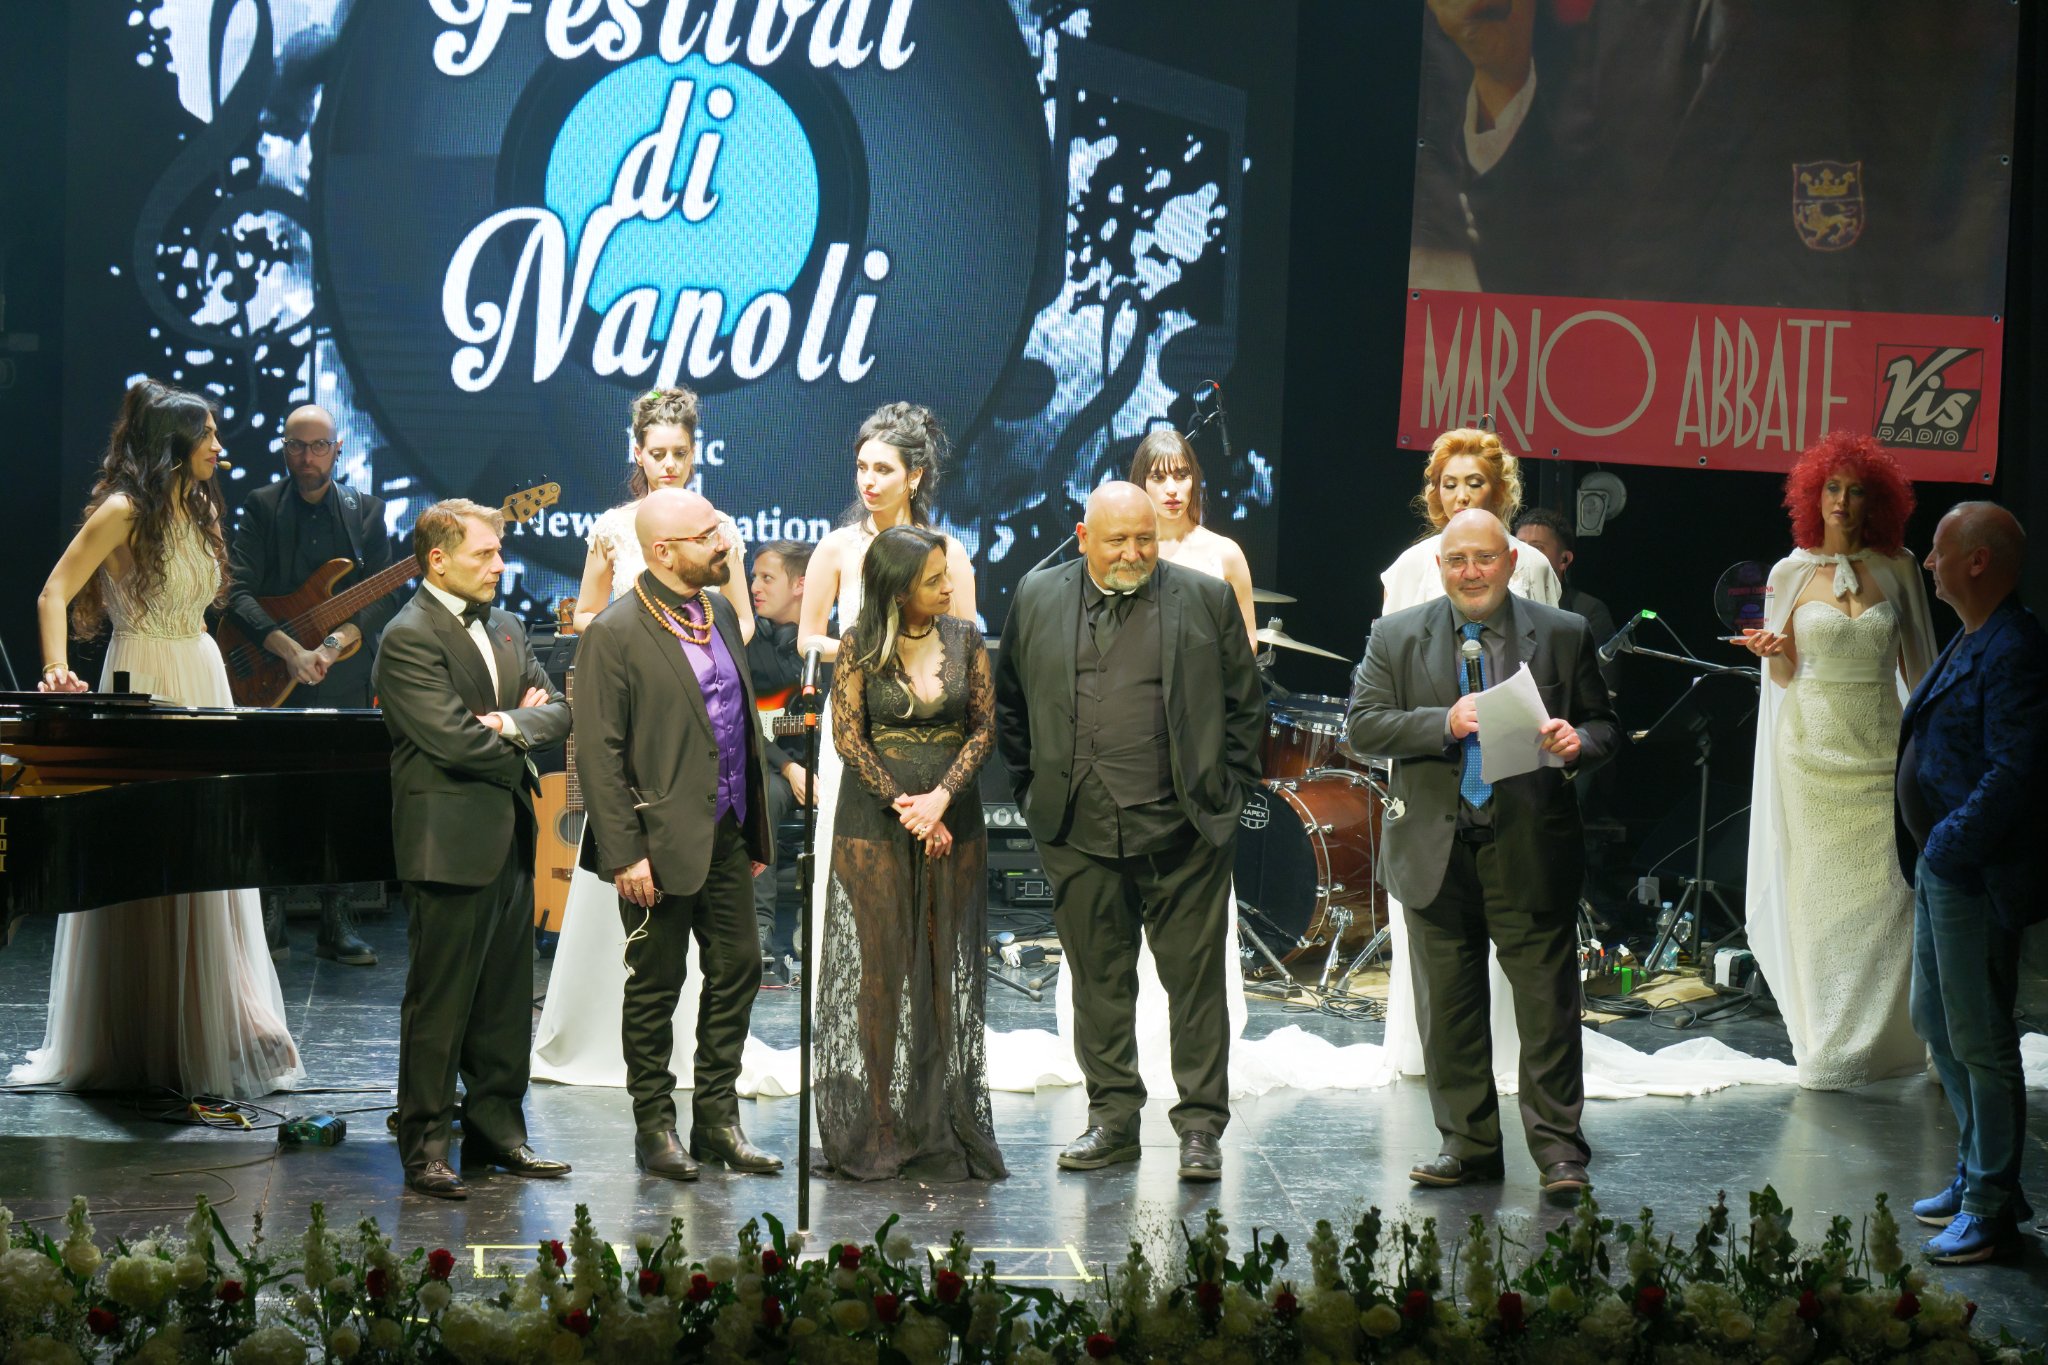 Foto 2 - Festival di Napoli, teatro Sannazzaro in Campania...